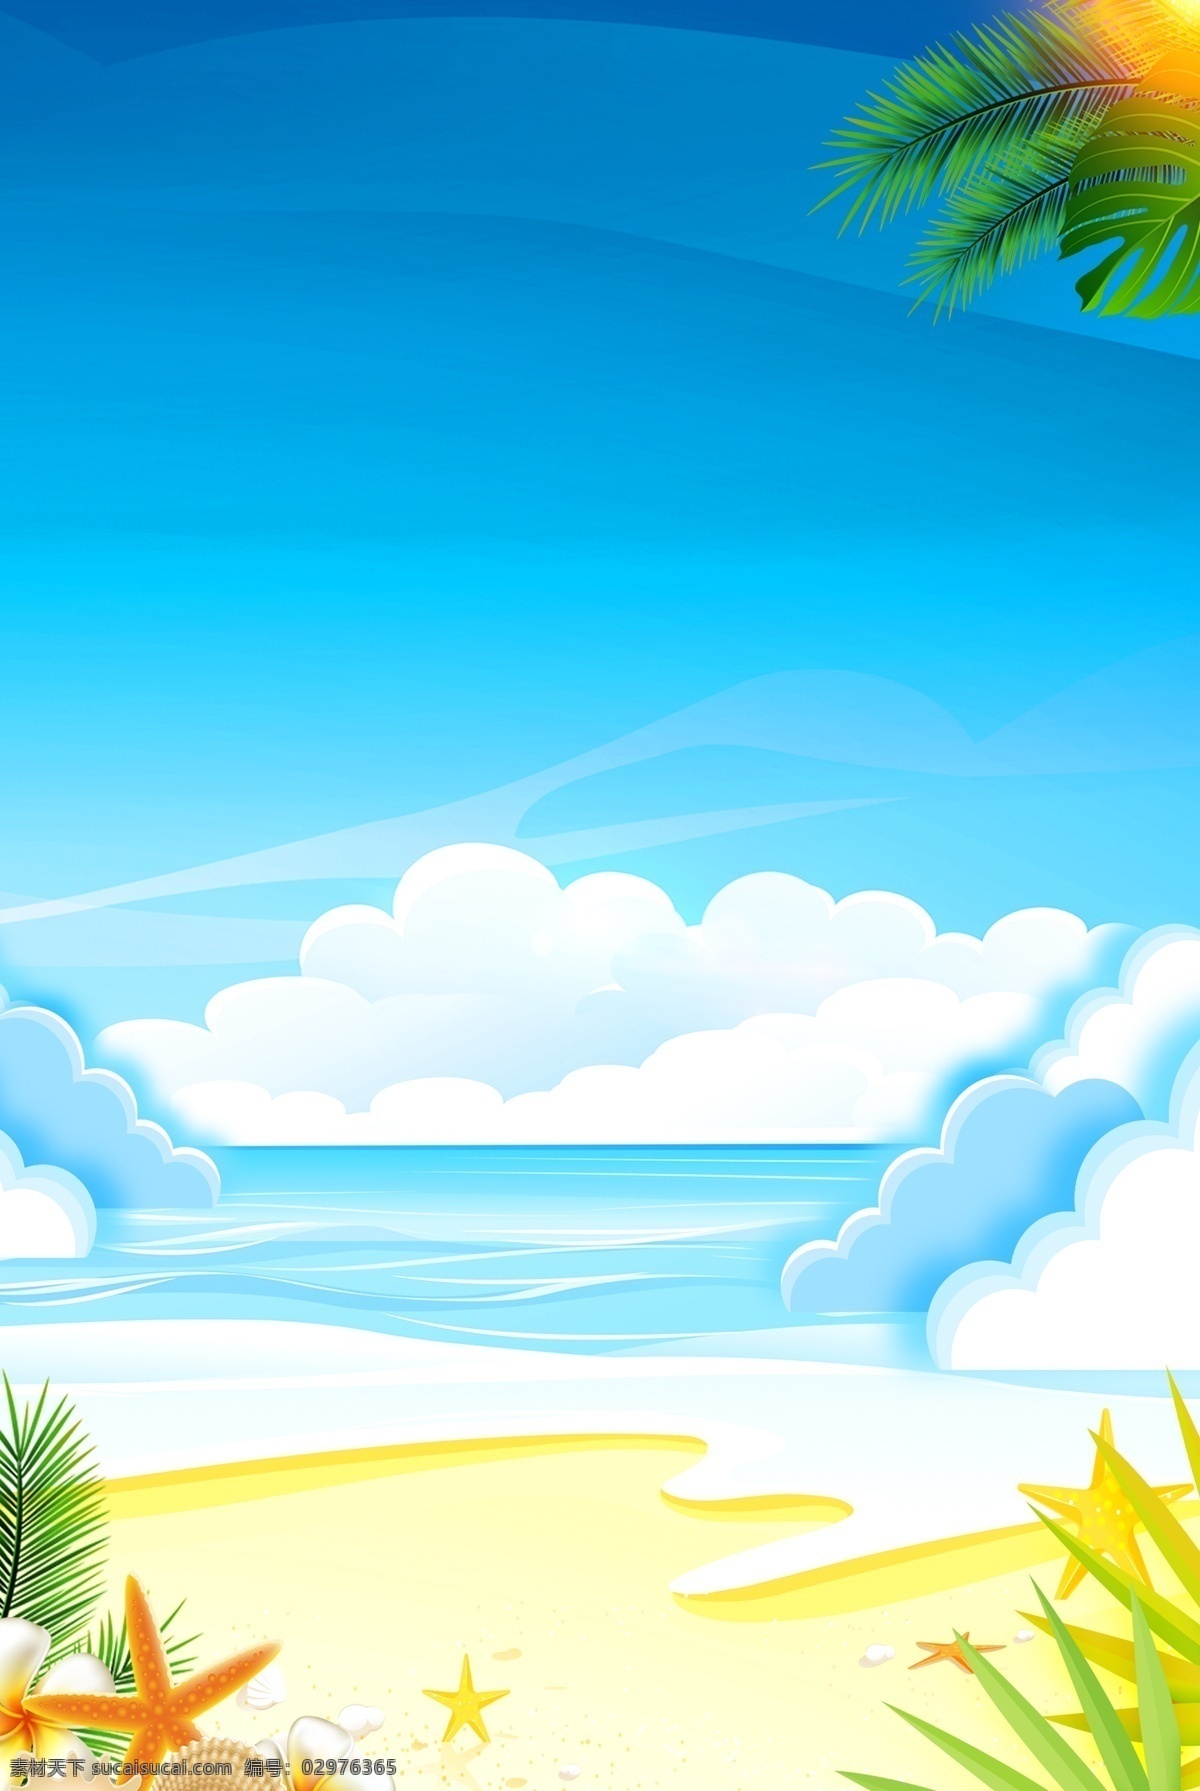 简单 夏季 沙滩 云朵 主题 背景 夏日 初夏 夏天 夏日场景 景色 美景 夏至 花卉 绿植